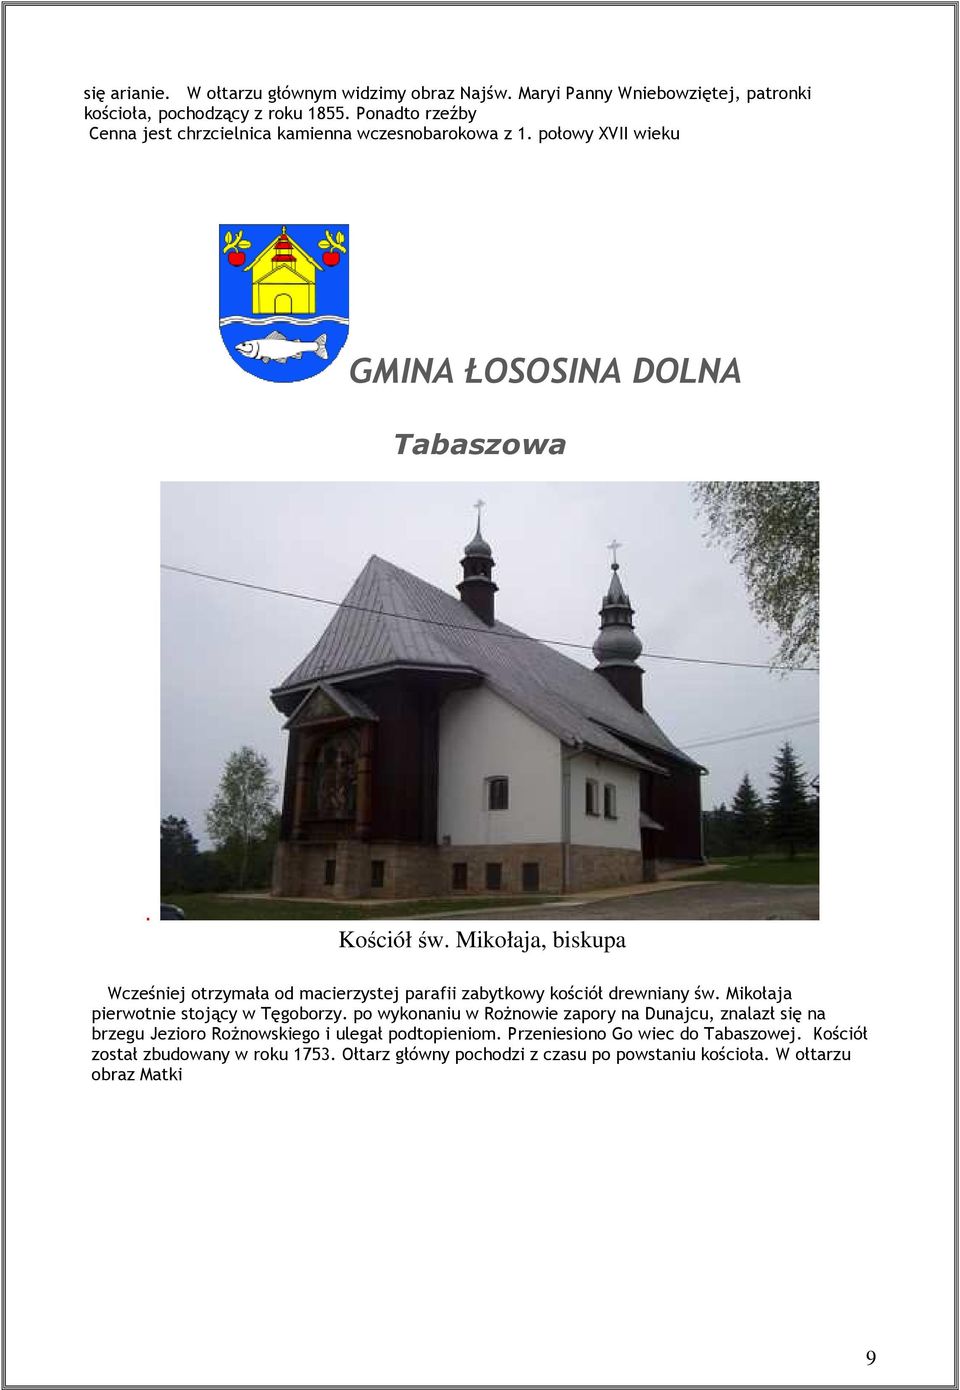 Mikołaja, biskupa Wcześniej otrzymała od macierzystej parafii zabytkowy kościół drewniany św. Mikołaja pierwotnie stojący w Tęgoborzy.